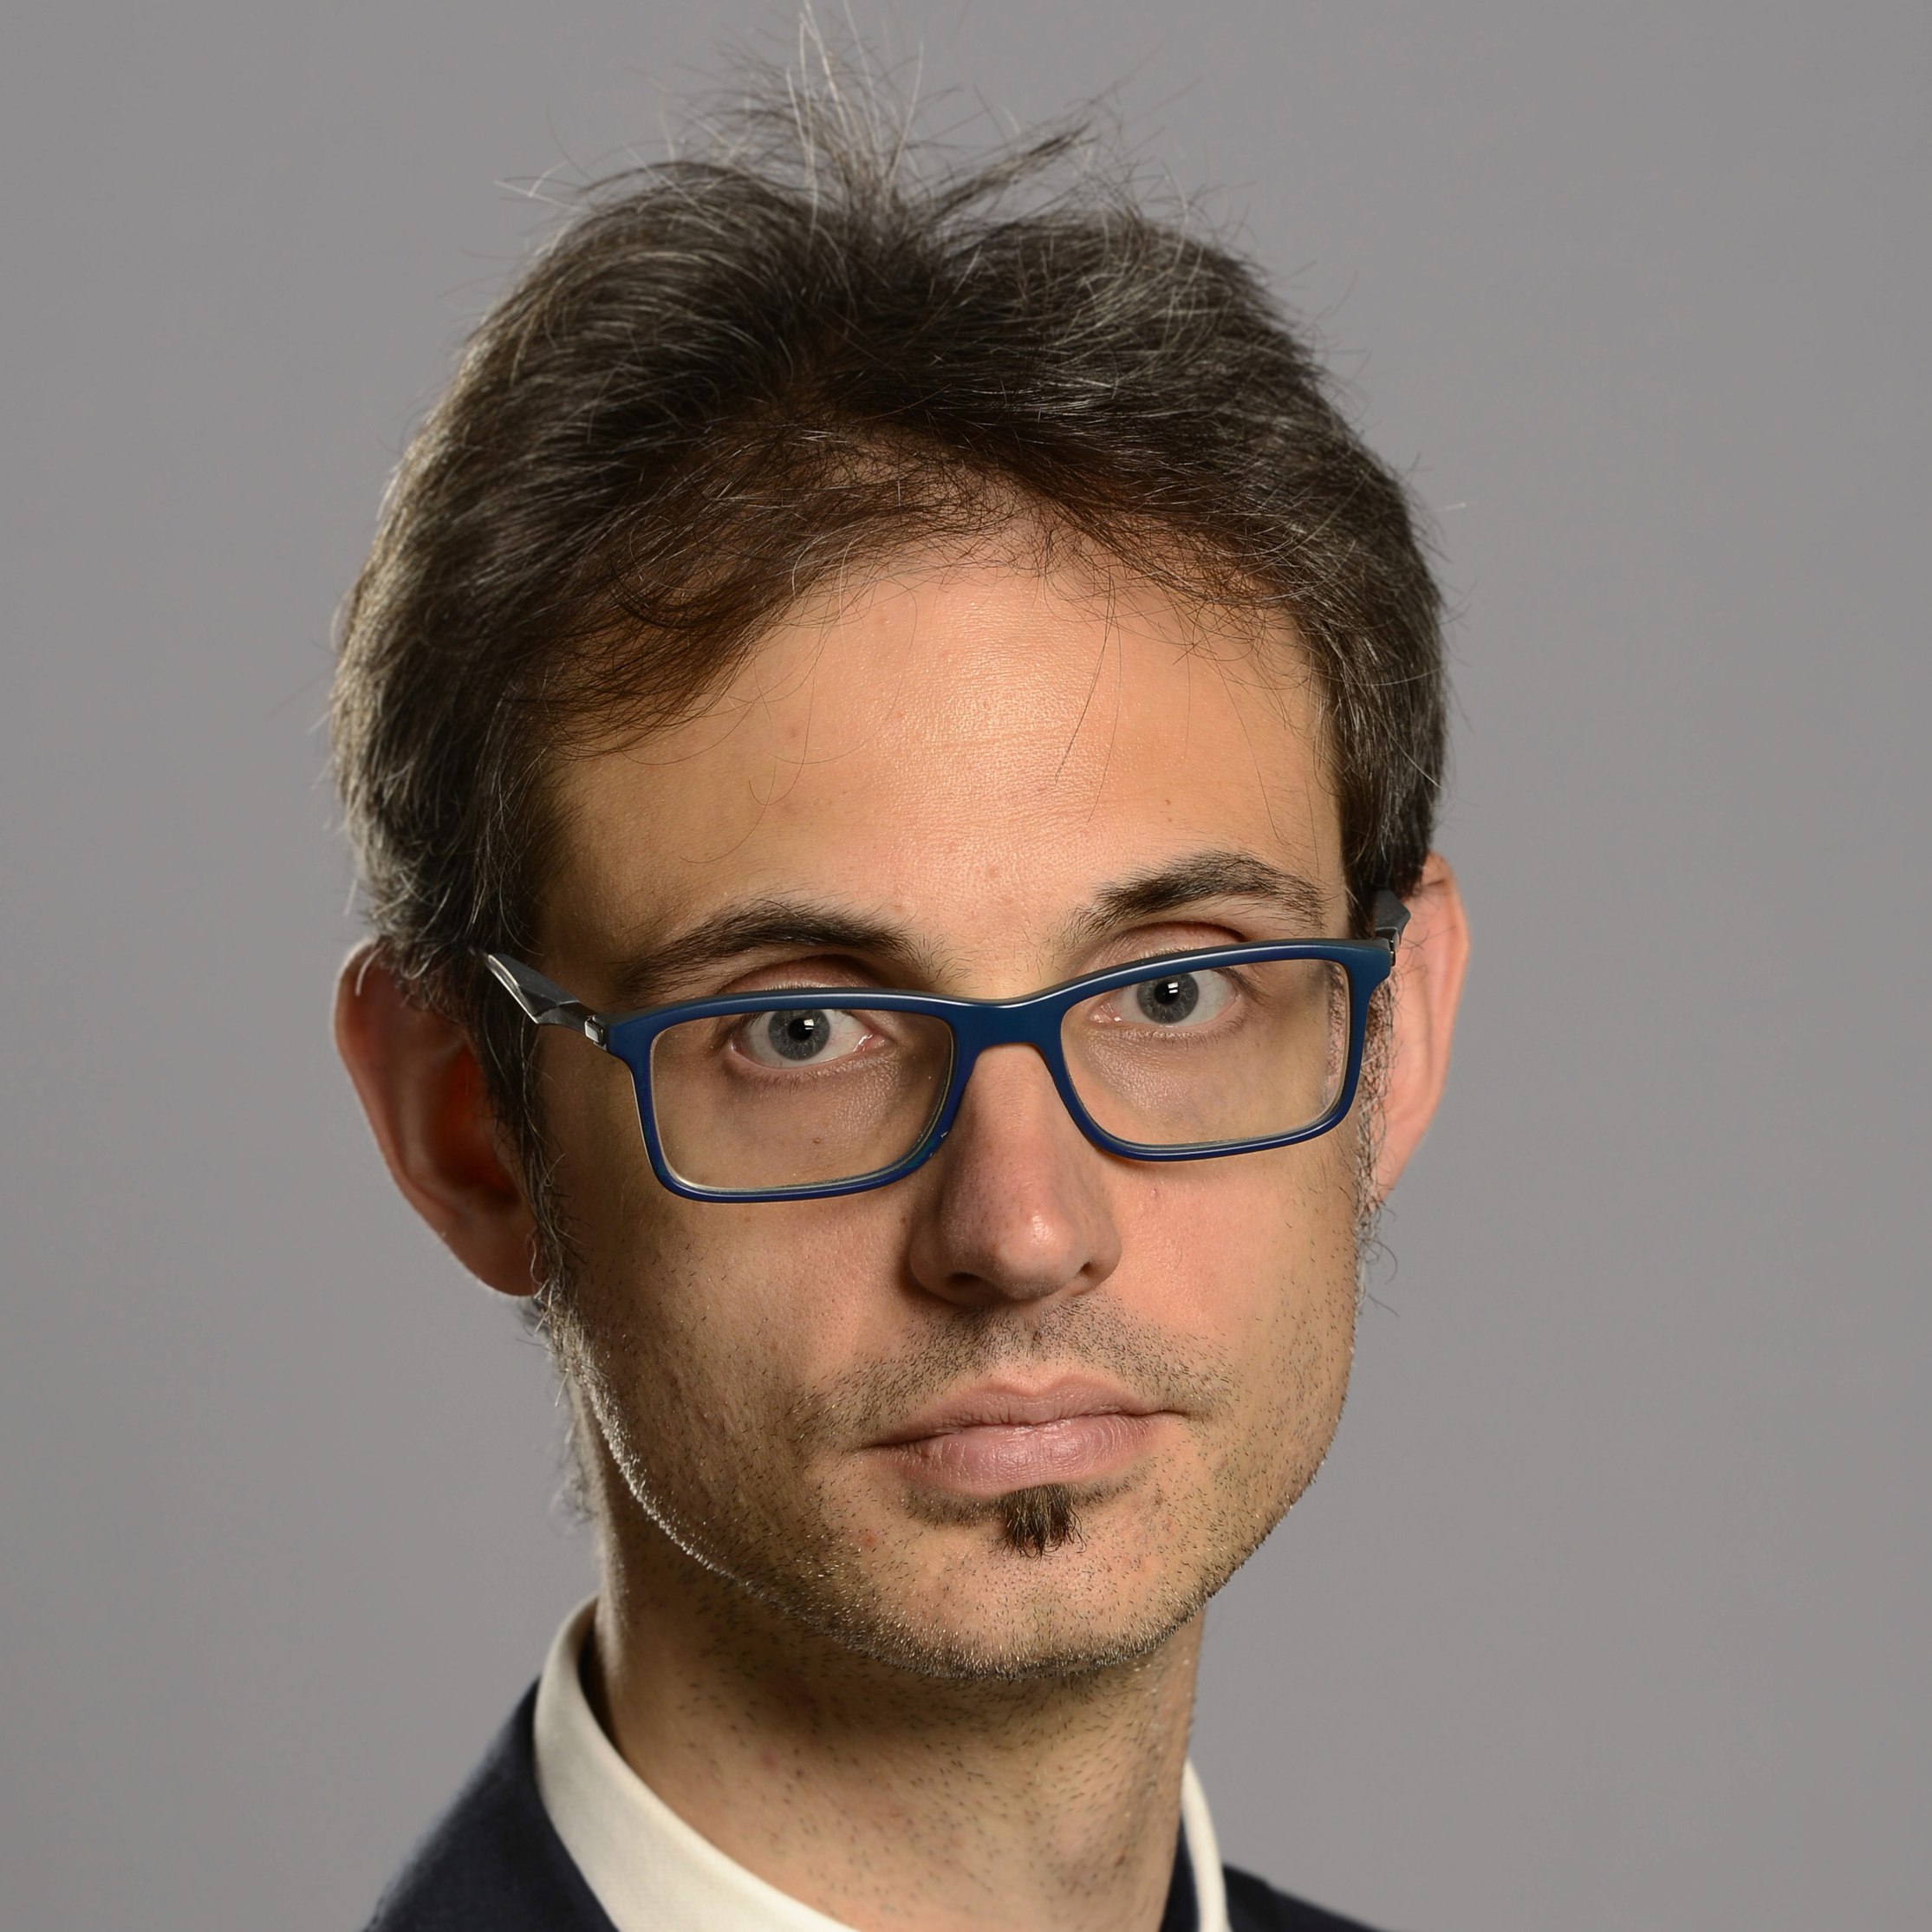 Filippo Zilio 's Author avatar